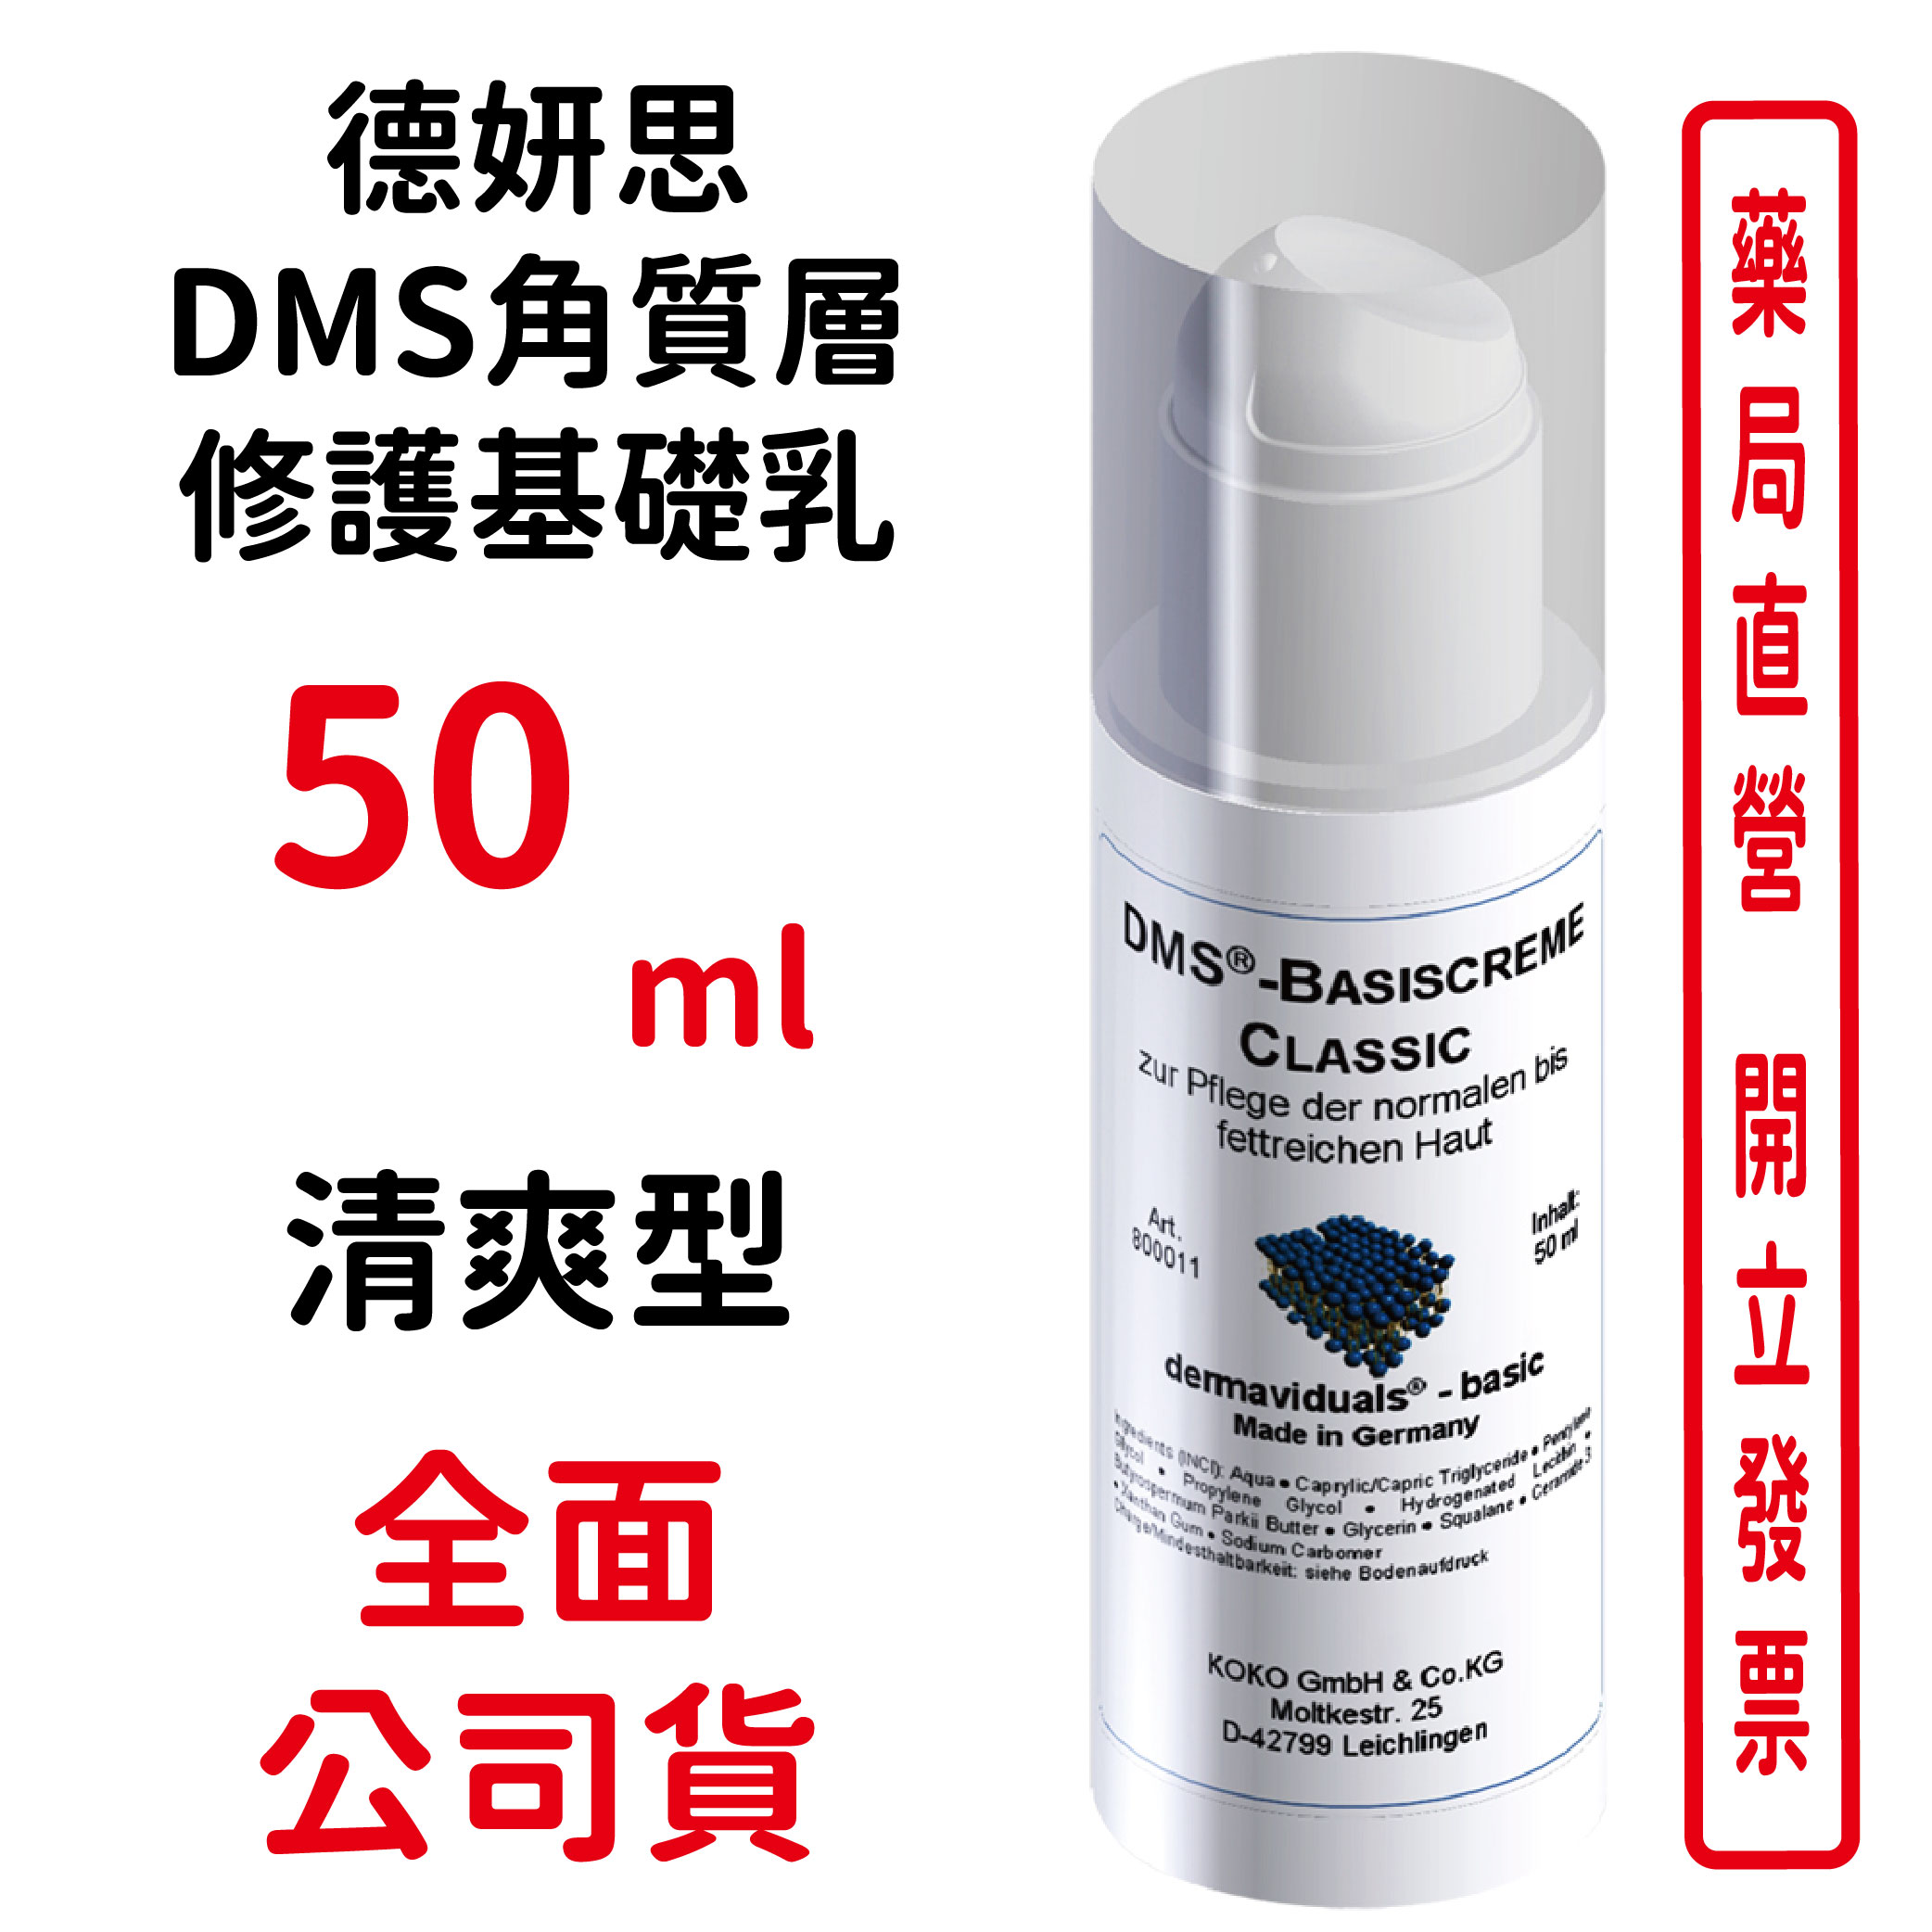 德妍思DMS角質層修護基礎乳(清爽型)-50ml